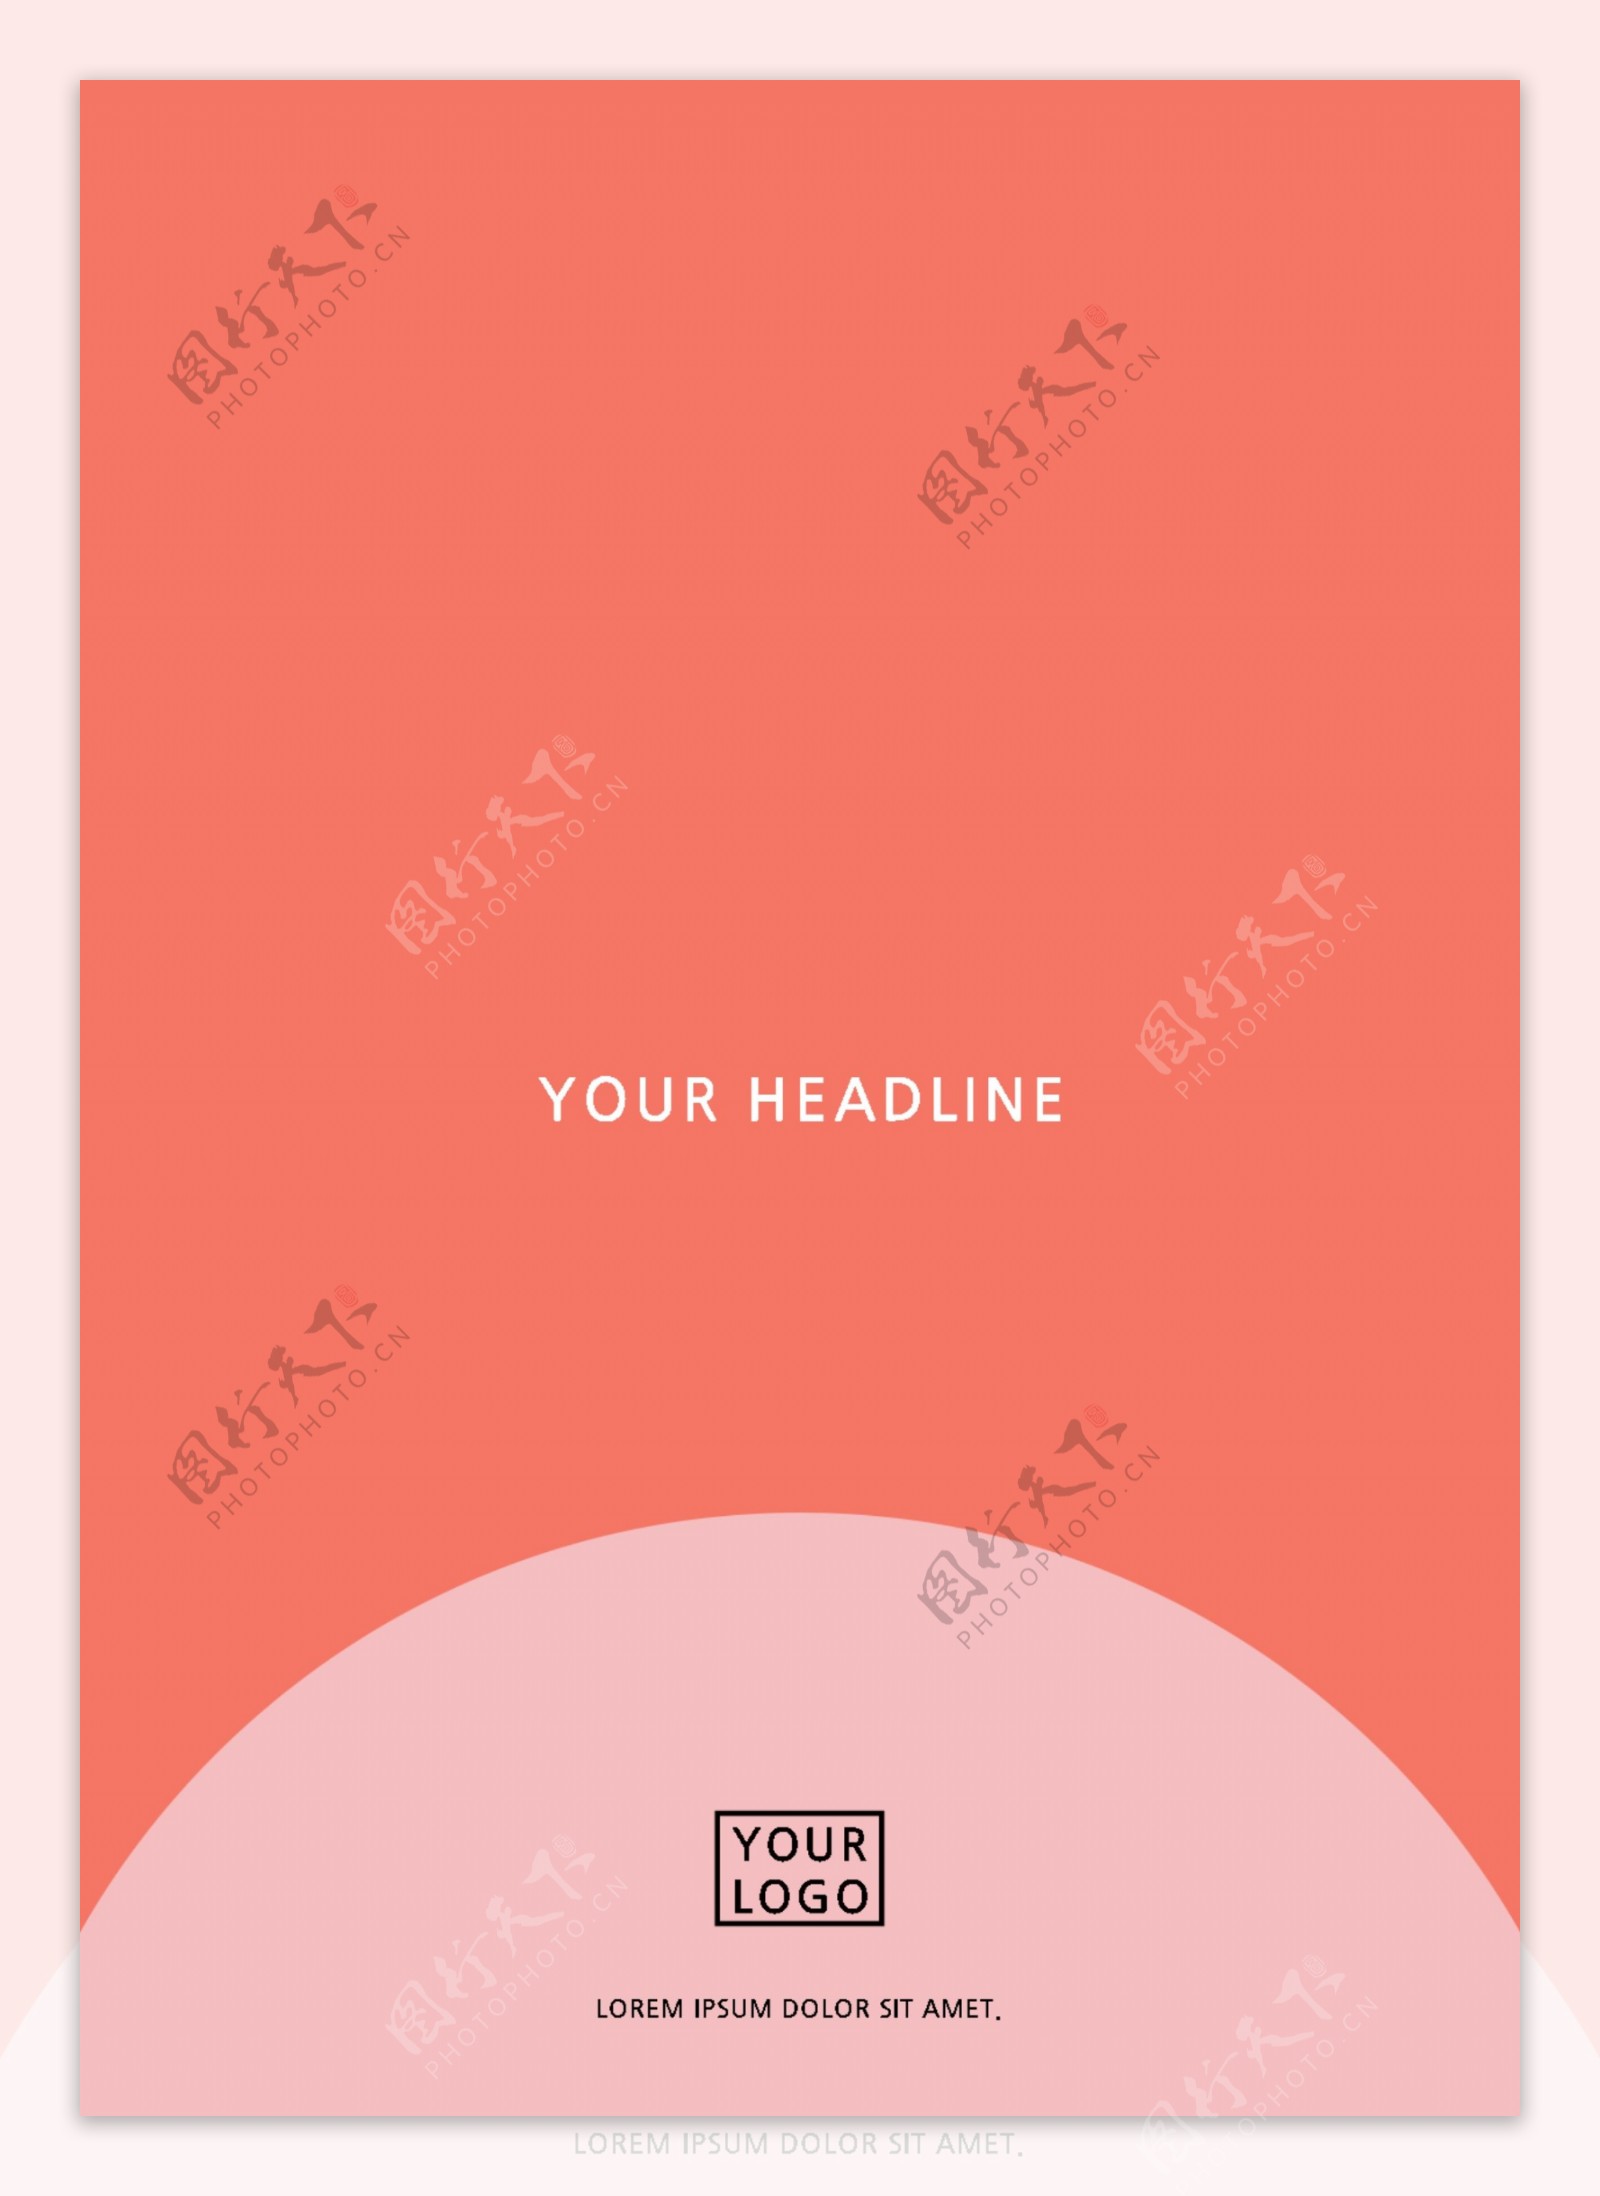 可爱清新简单的粉红色橙色文化和艺术创意抽象的个人专辑封面模板